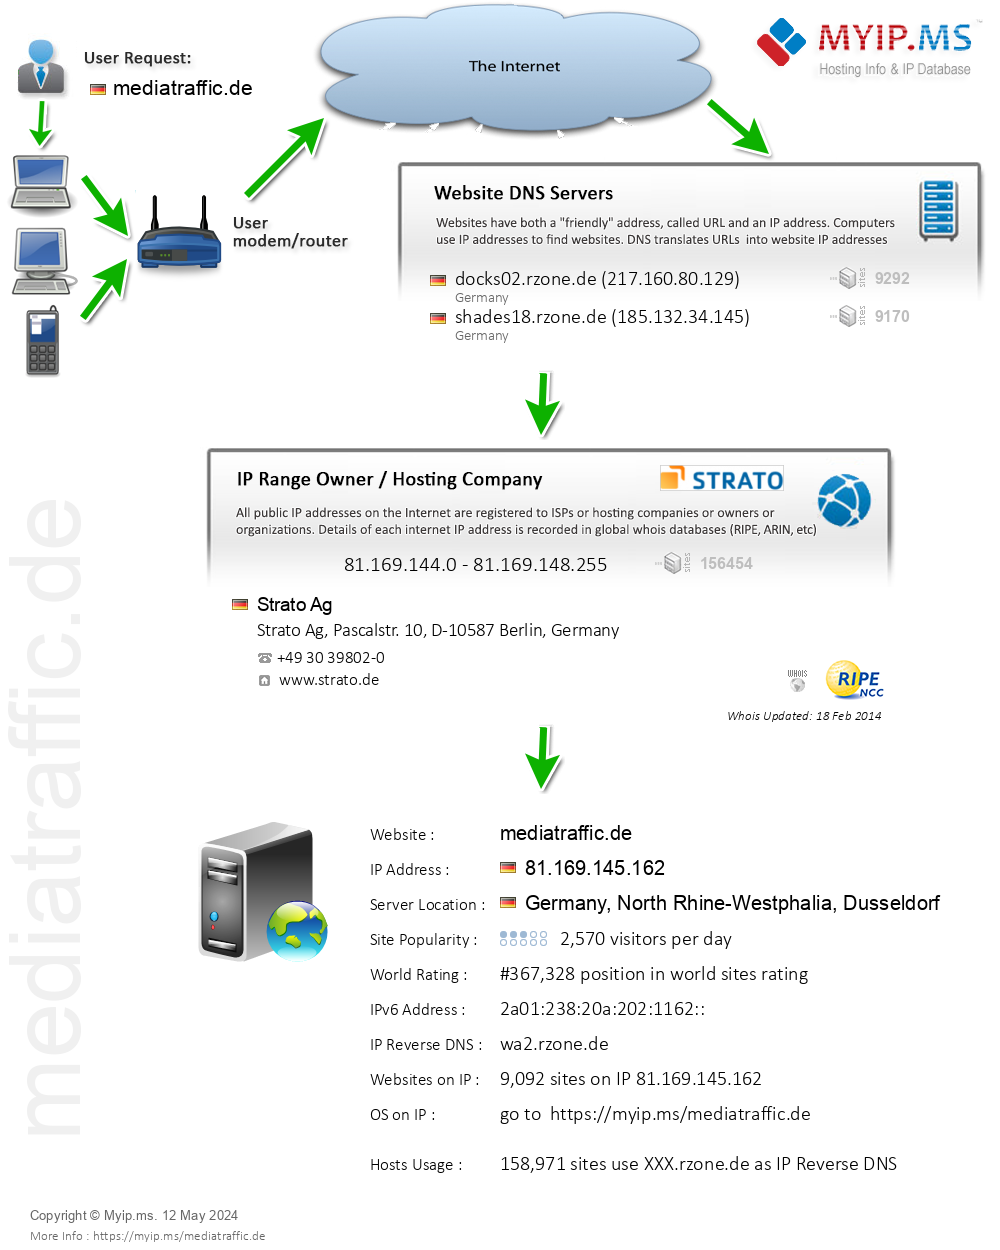 Mediatraffic.de - Website Hosting Visual IP Diagram